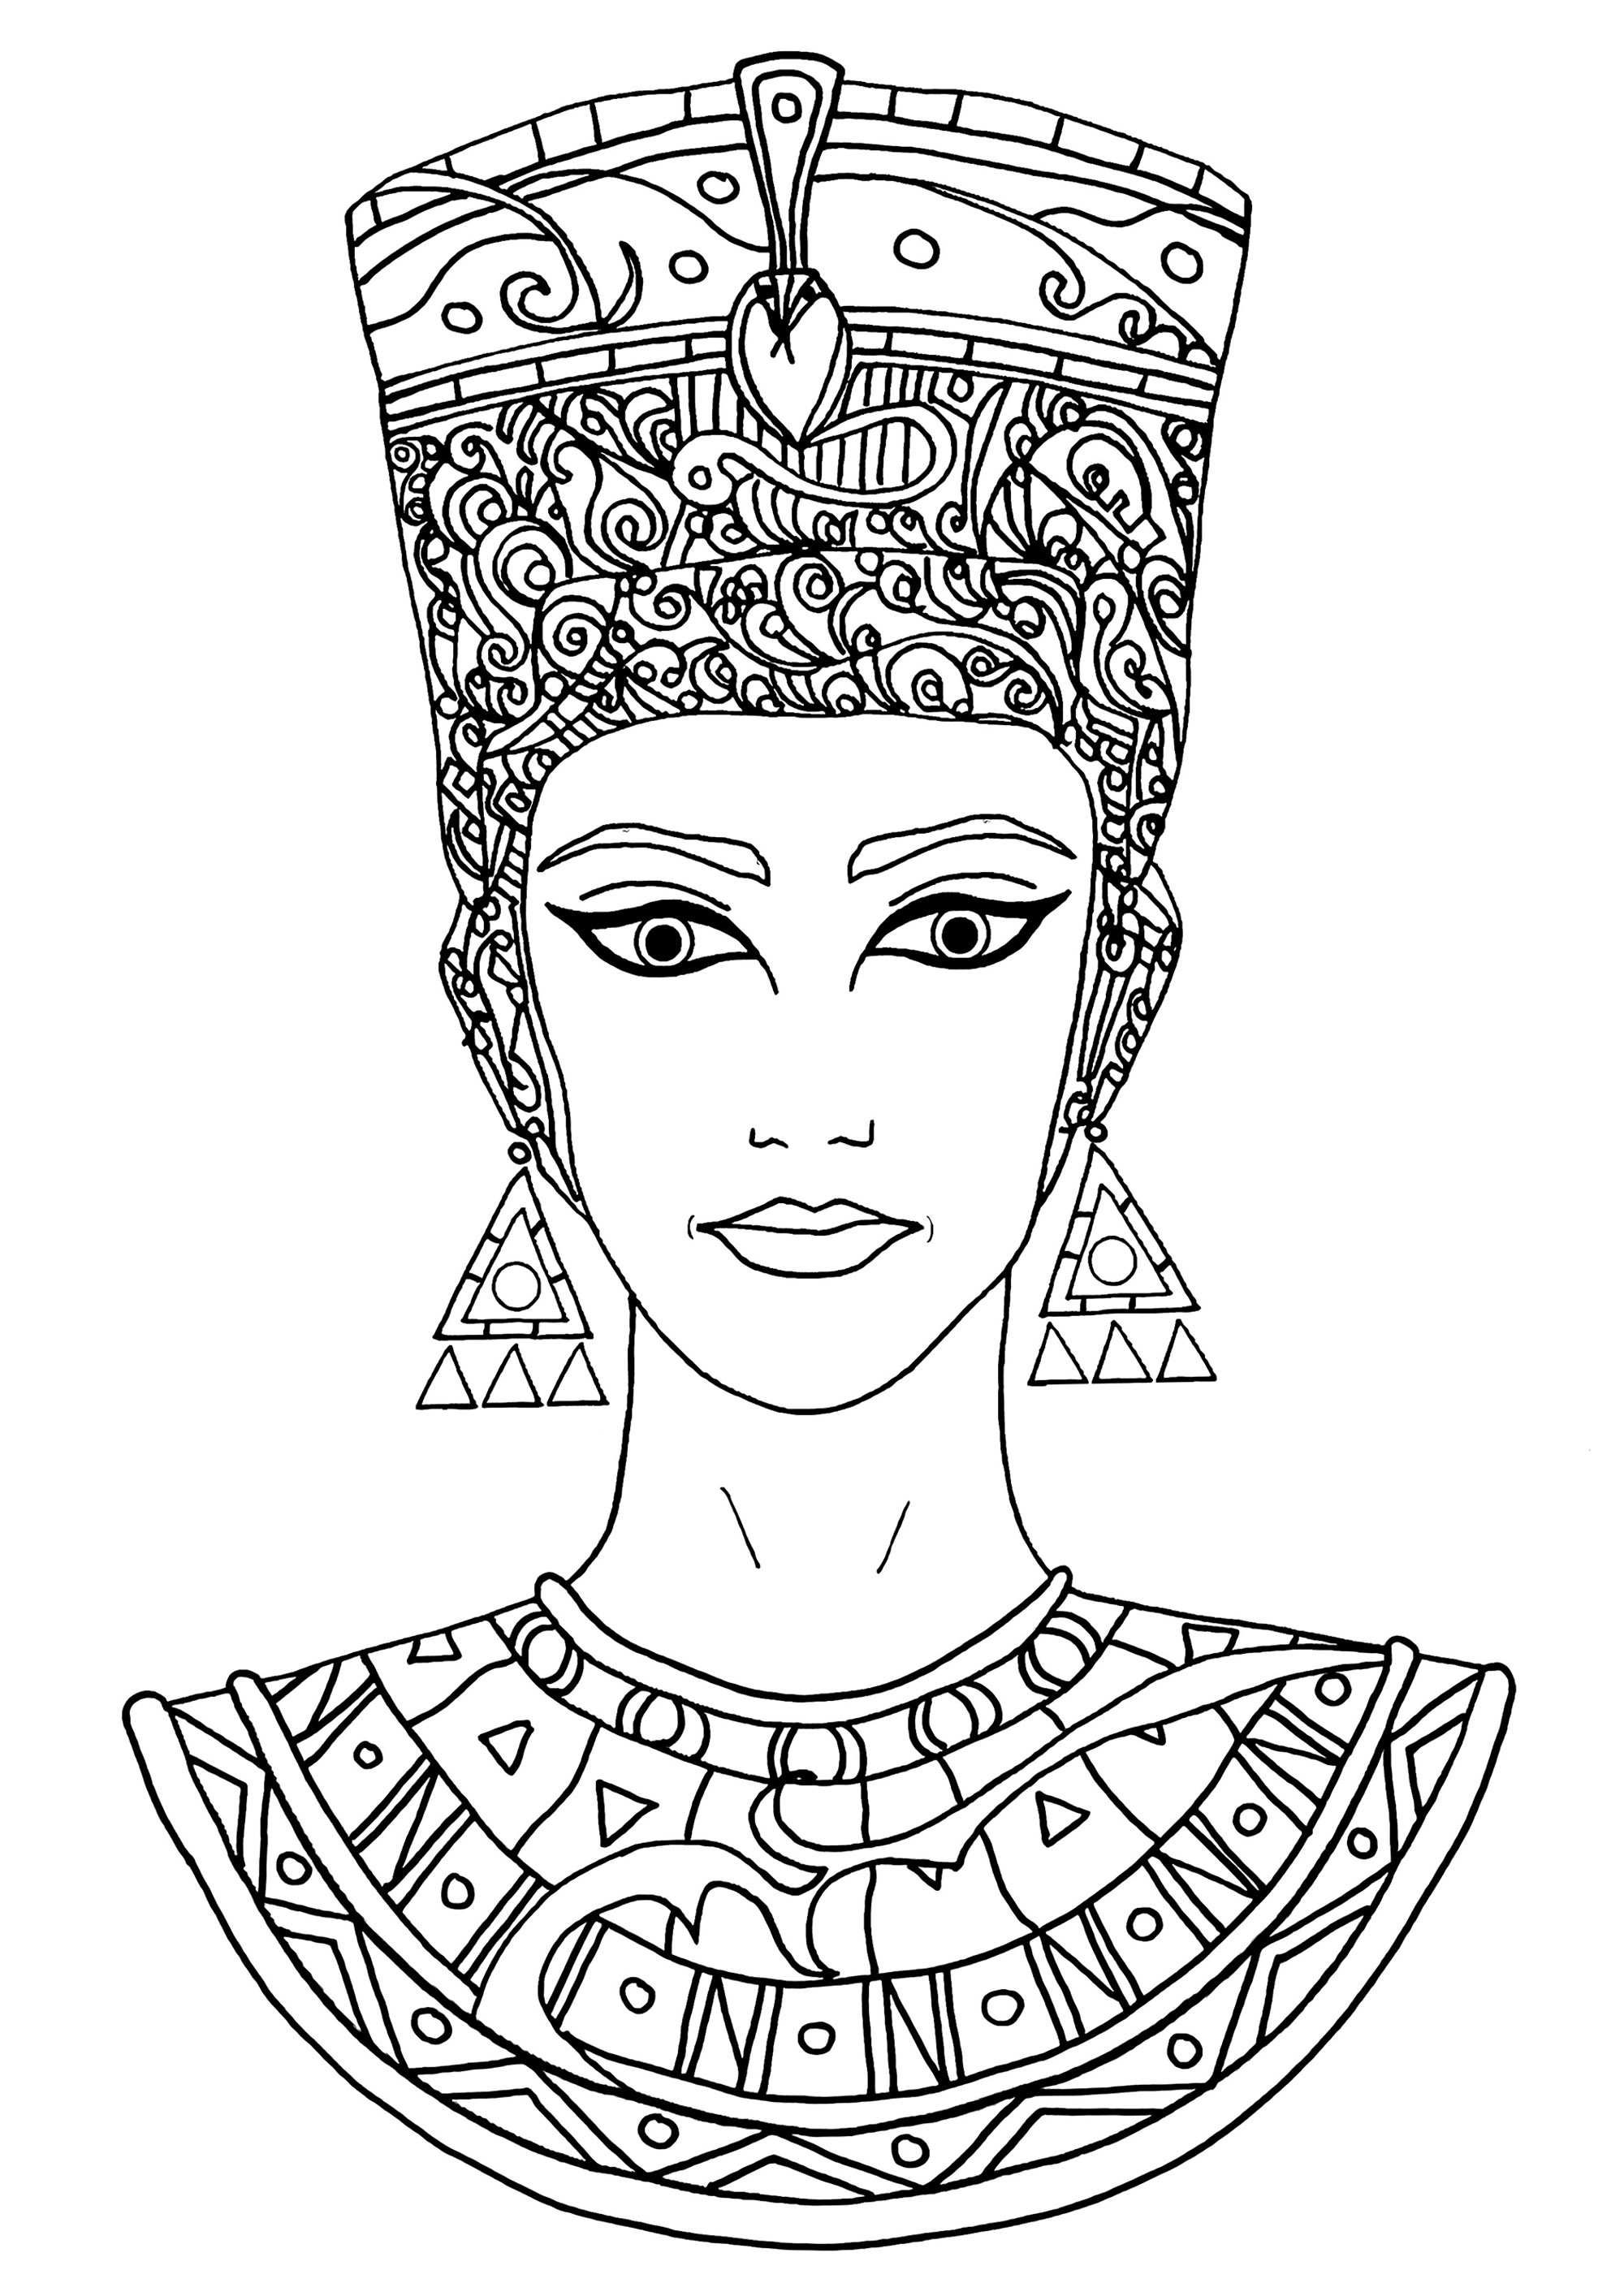 Belo desenho de Nefertiti para colorir. Nefertiti era uma rainha muito importante, poderosa e respeitada no Egipto há muito tempo. Foi esposa do rei Akhenaten e juntos governaram o país e ajudaram a mudar as crenças religiosas do Egipto. Nefertiti era muito bela e foi encontrada uma estátua dela que é muito famosa hoje em dia.